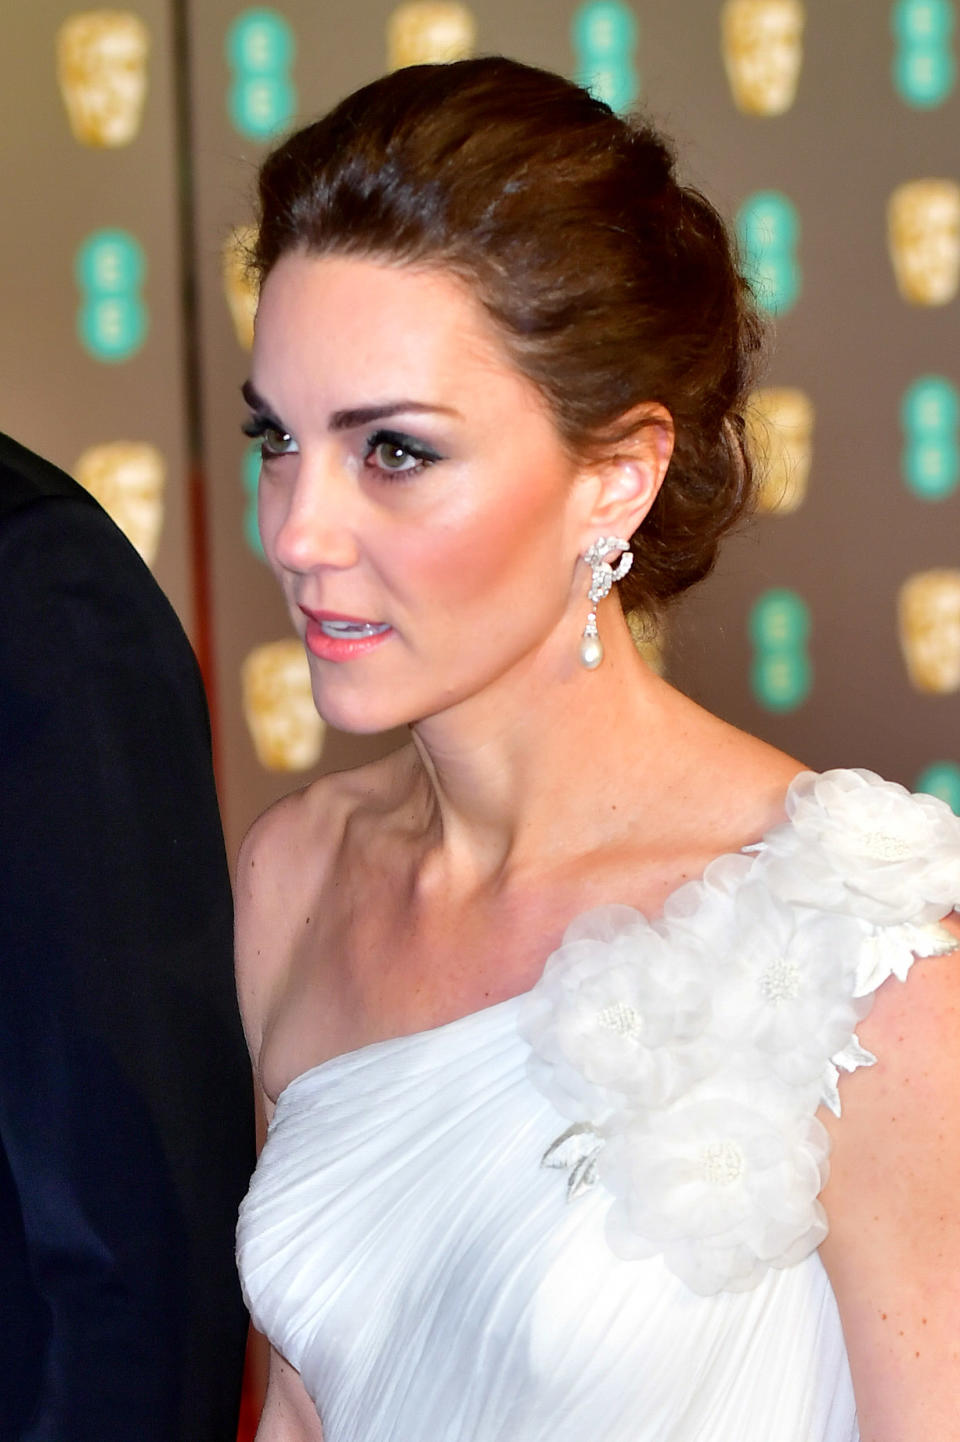 She was wearing Diana’s earrings. Photo: Getty